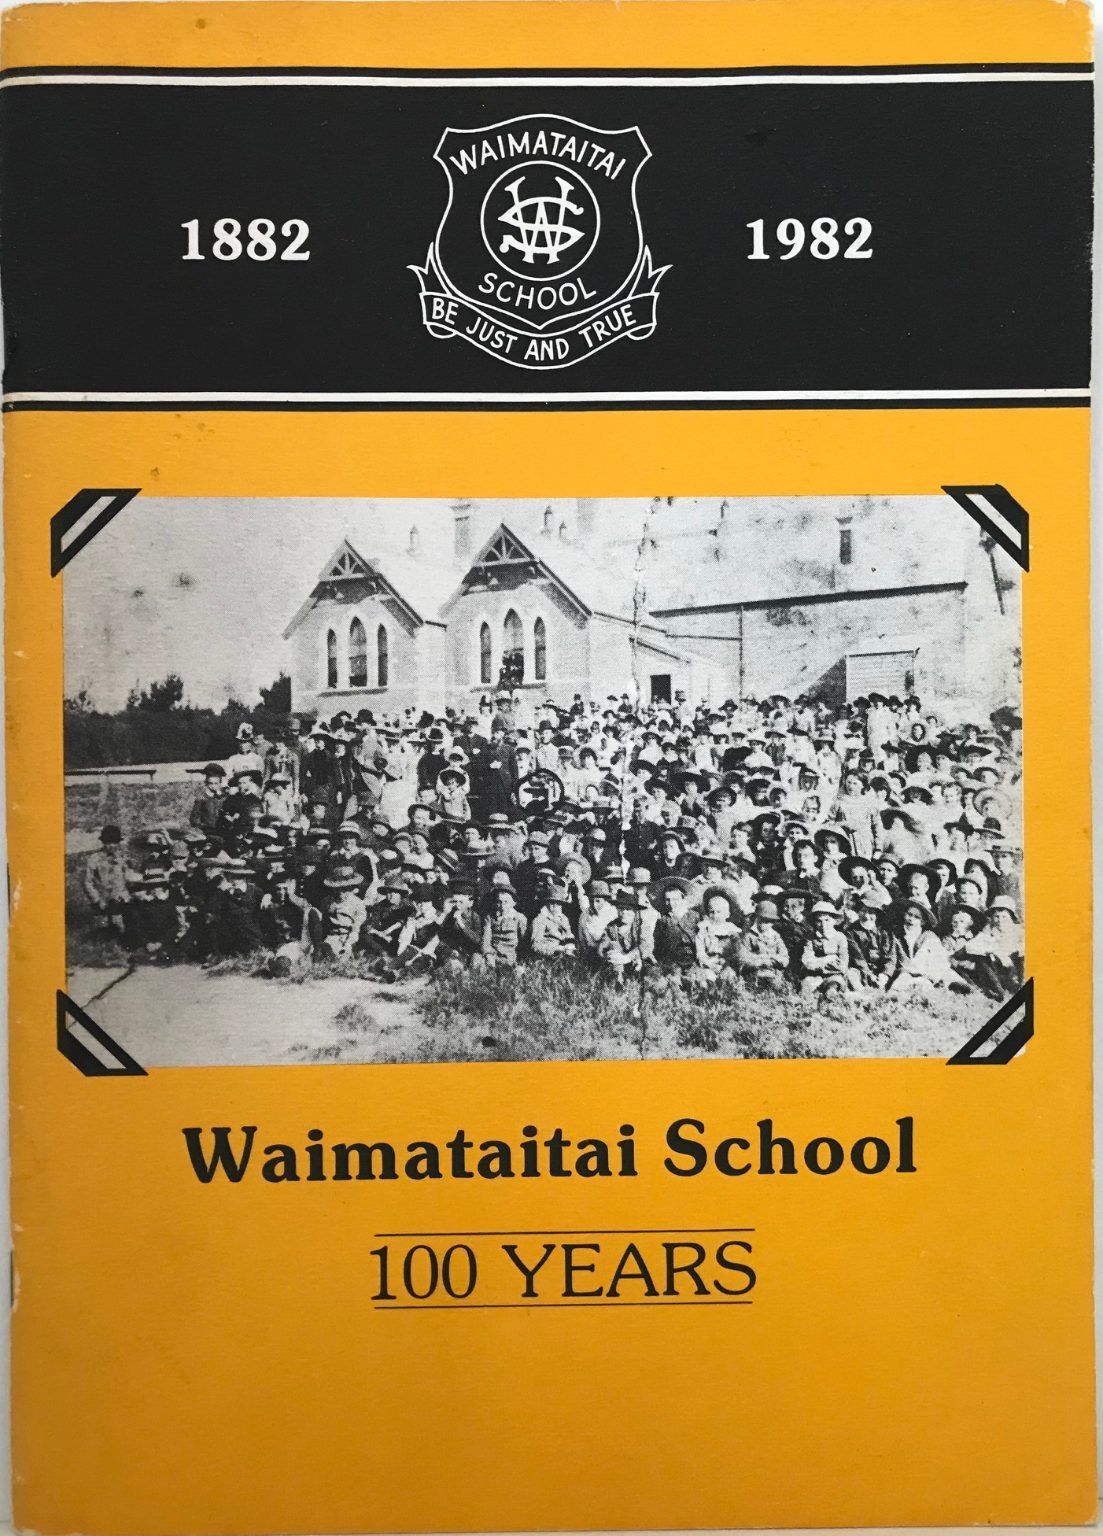 WAIMATAITAI SCHOOL 100 YEARS 1882-1982